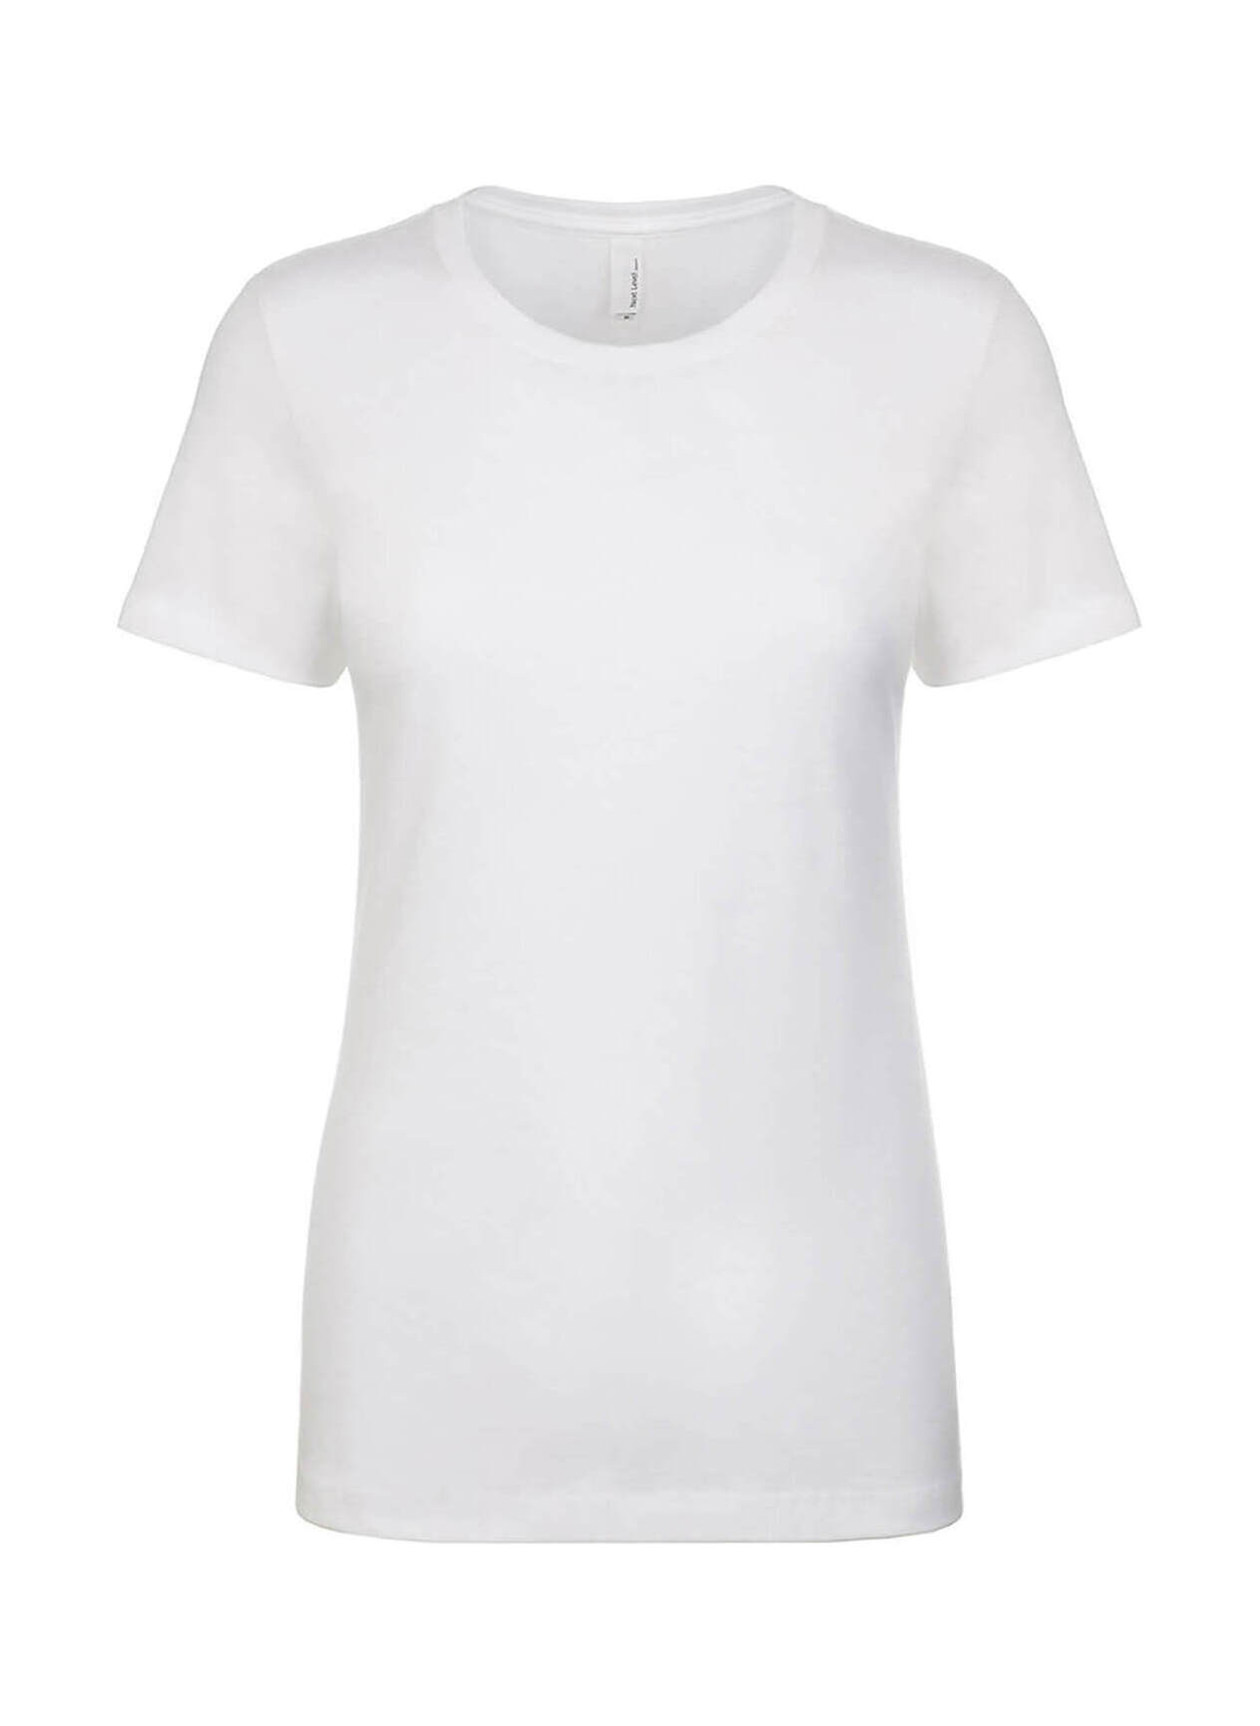 Next Level Women's White Boyfriend T-Shirt